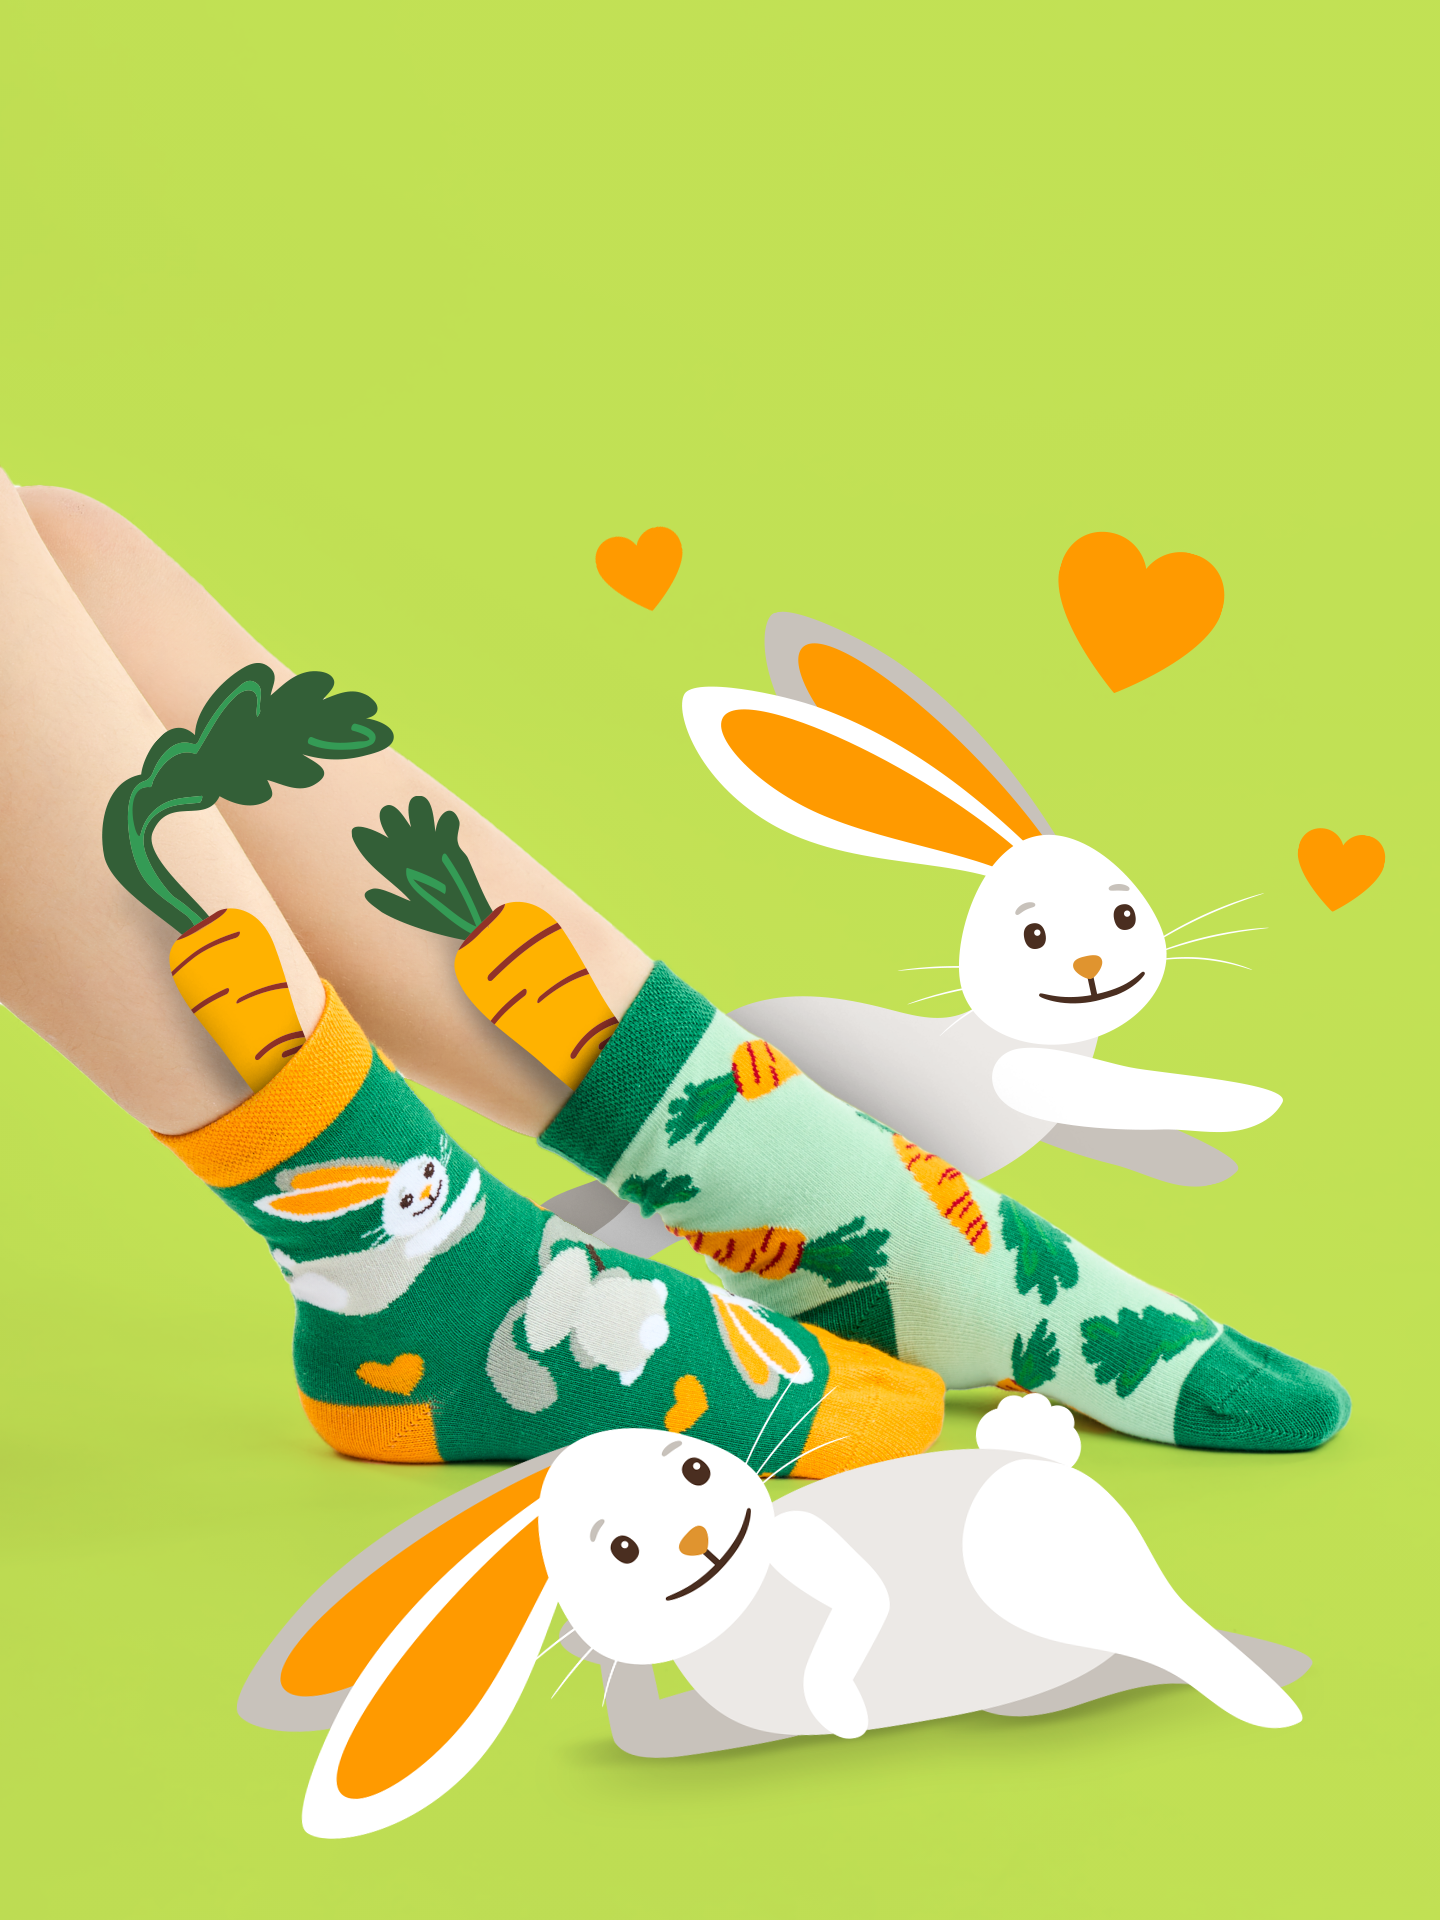 Kids' Socks Rabbit and Carrot